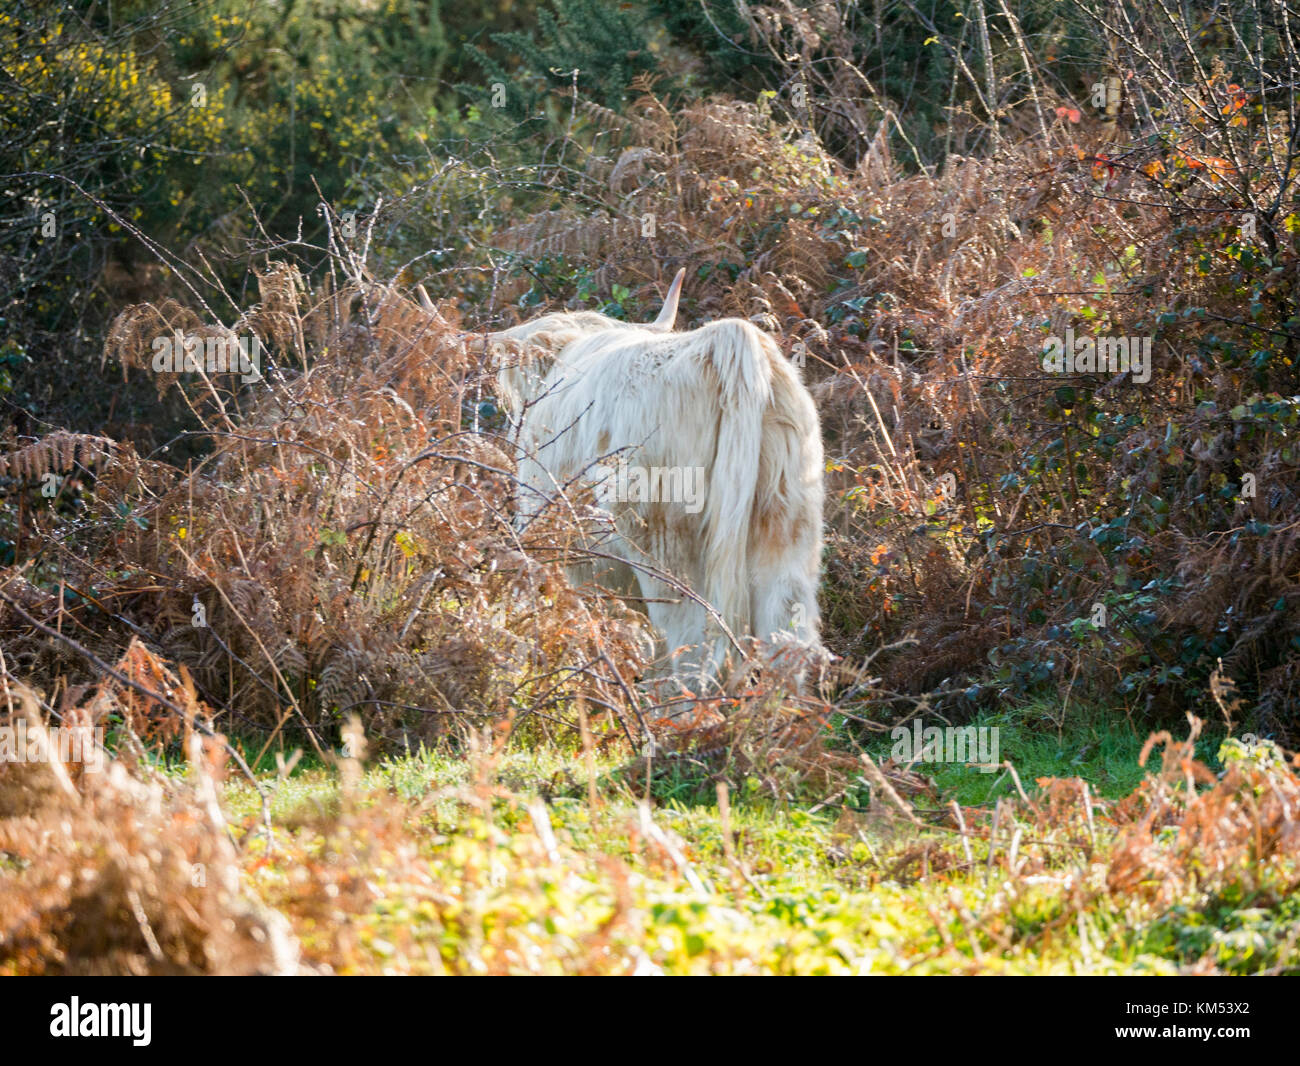 Highland Kuh an hothfield Gemeinsame Naturschutzgebiet - Kent Stockfoto